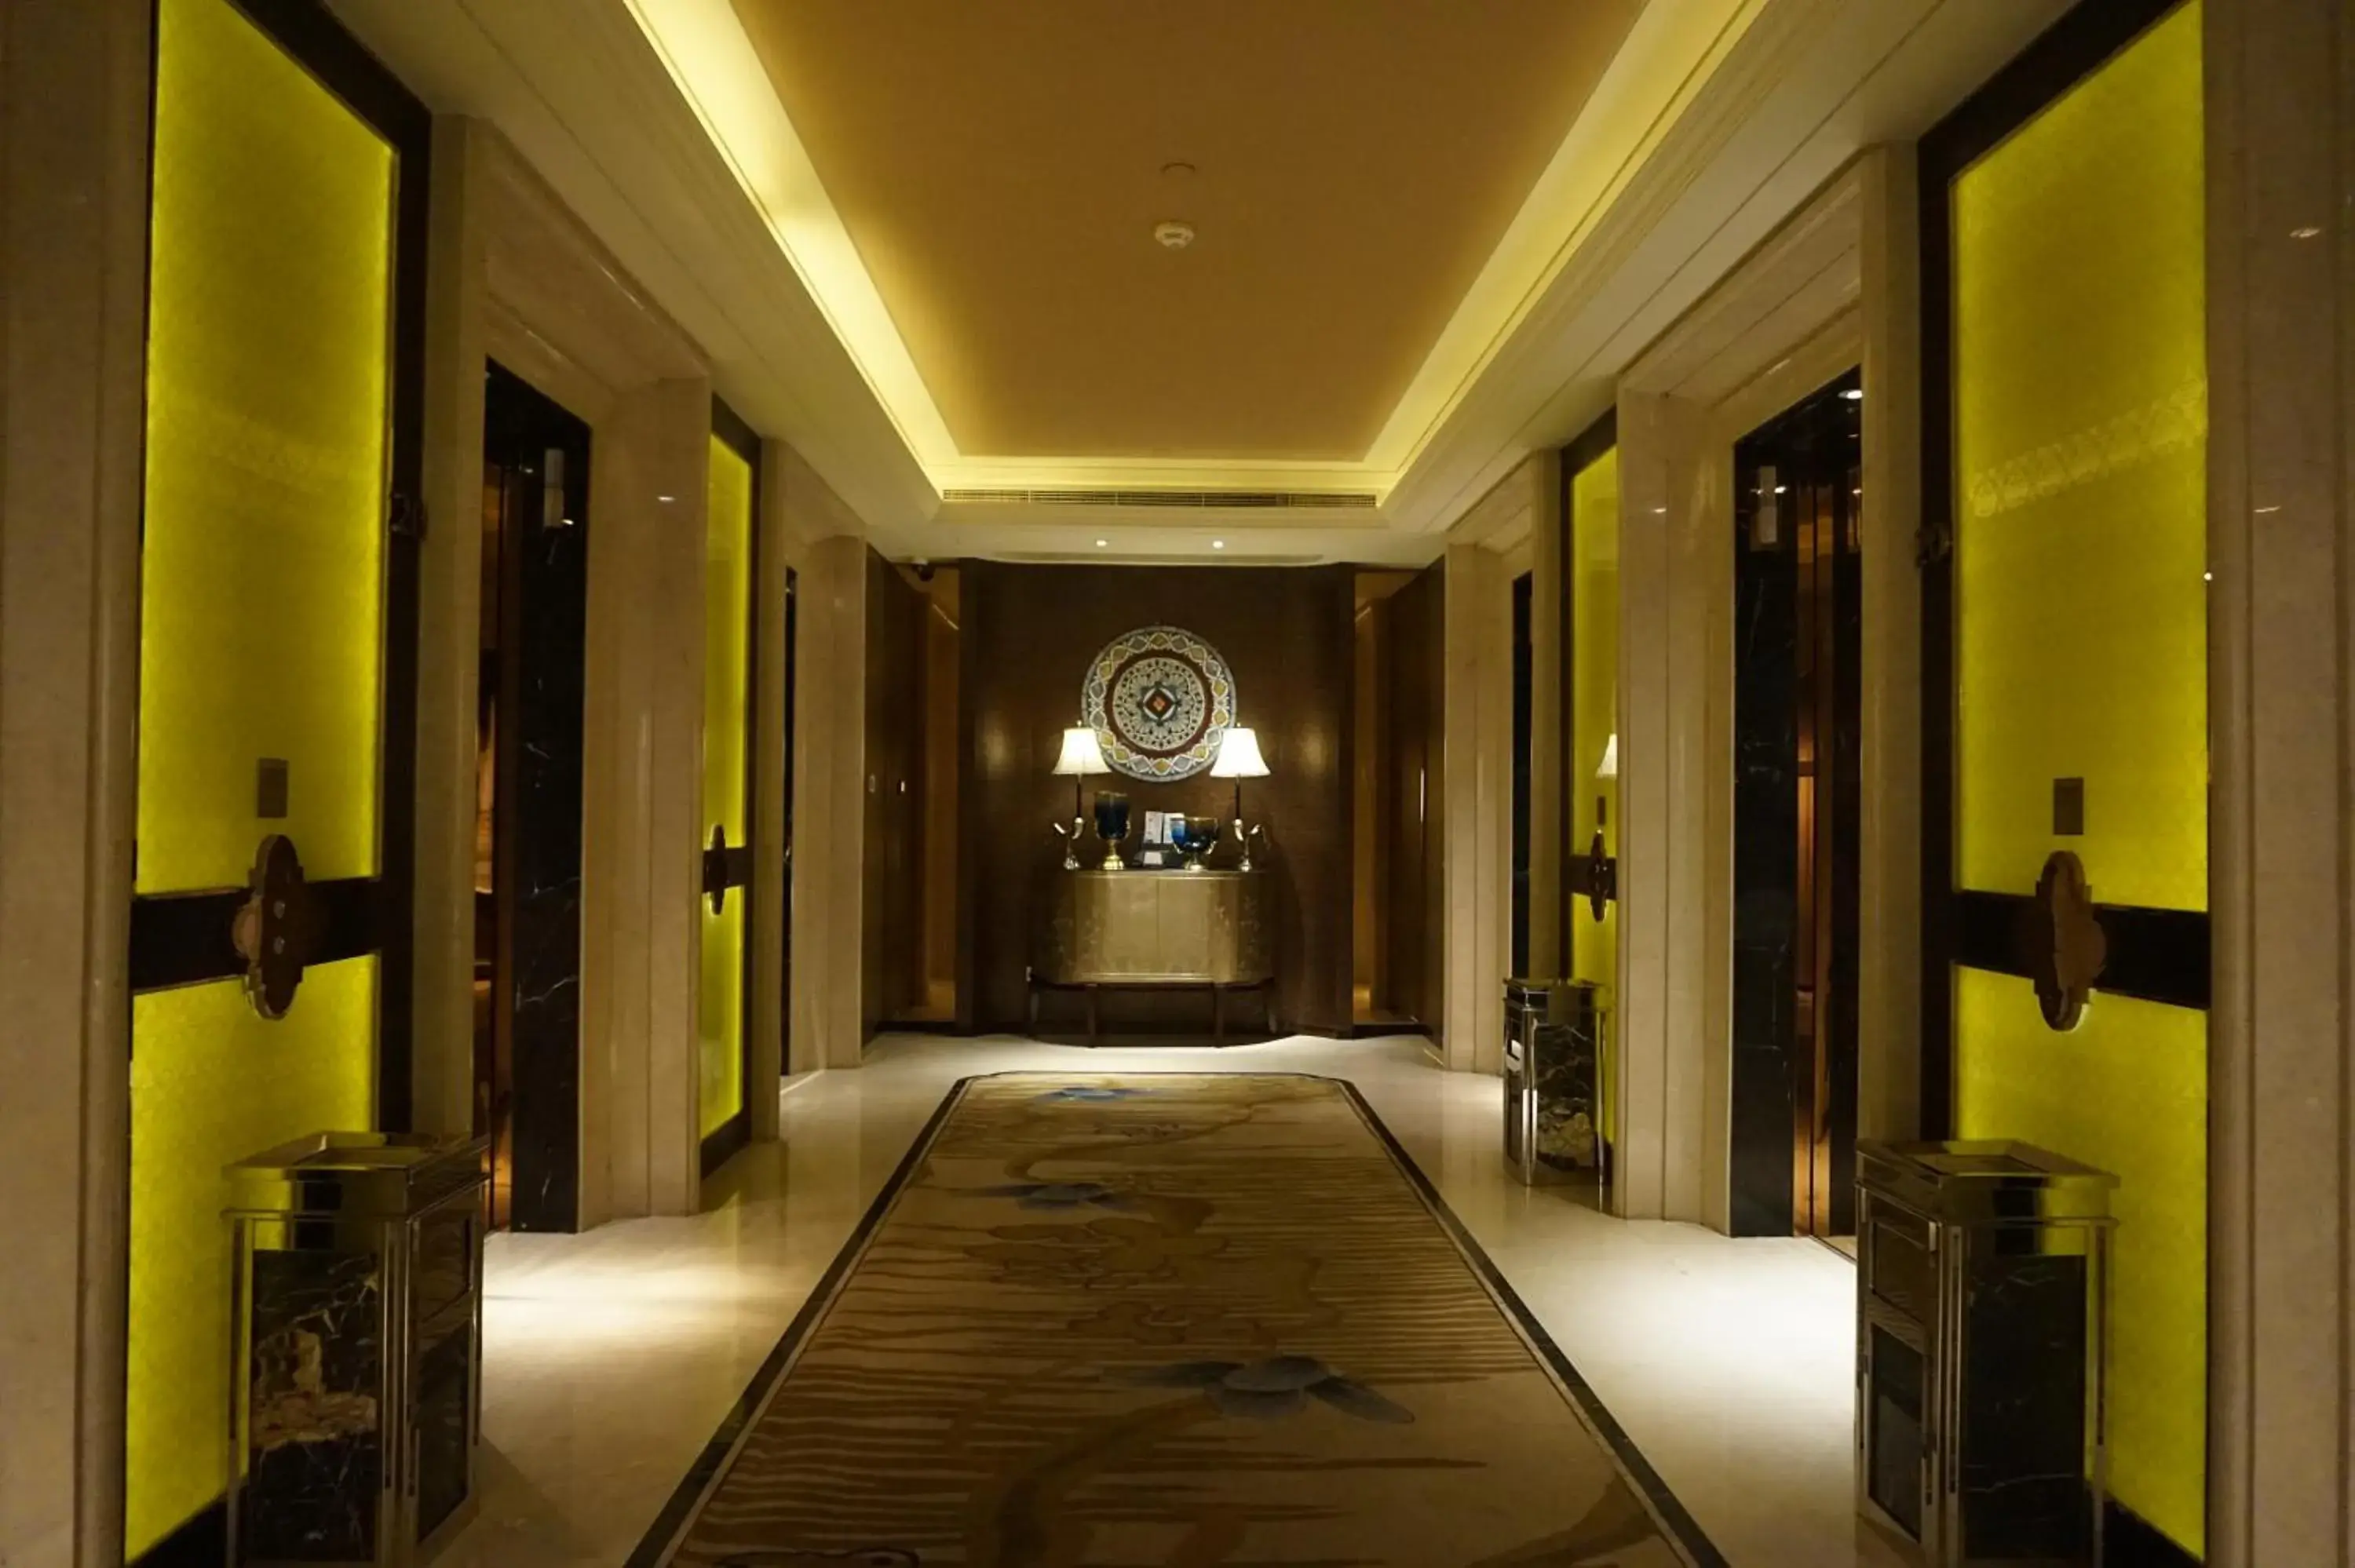 Decorative detail in Wanda Realm Harbin Hotel